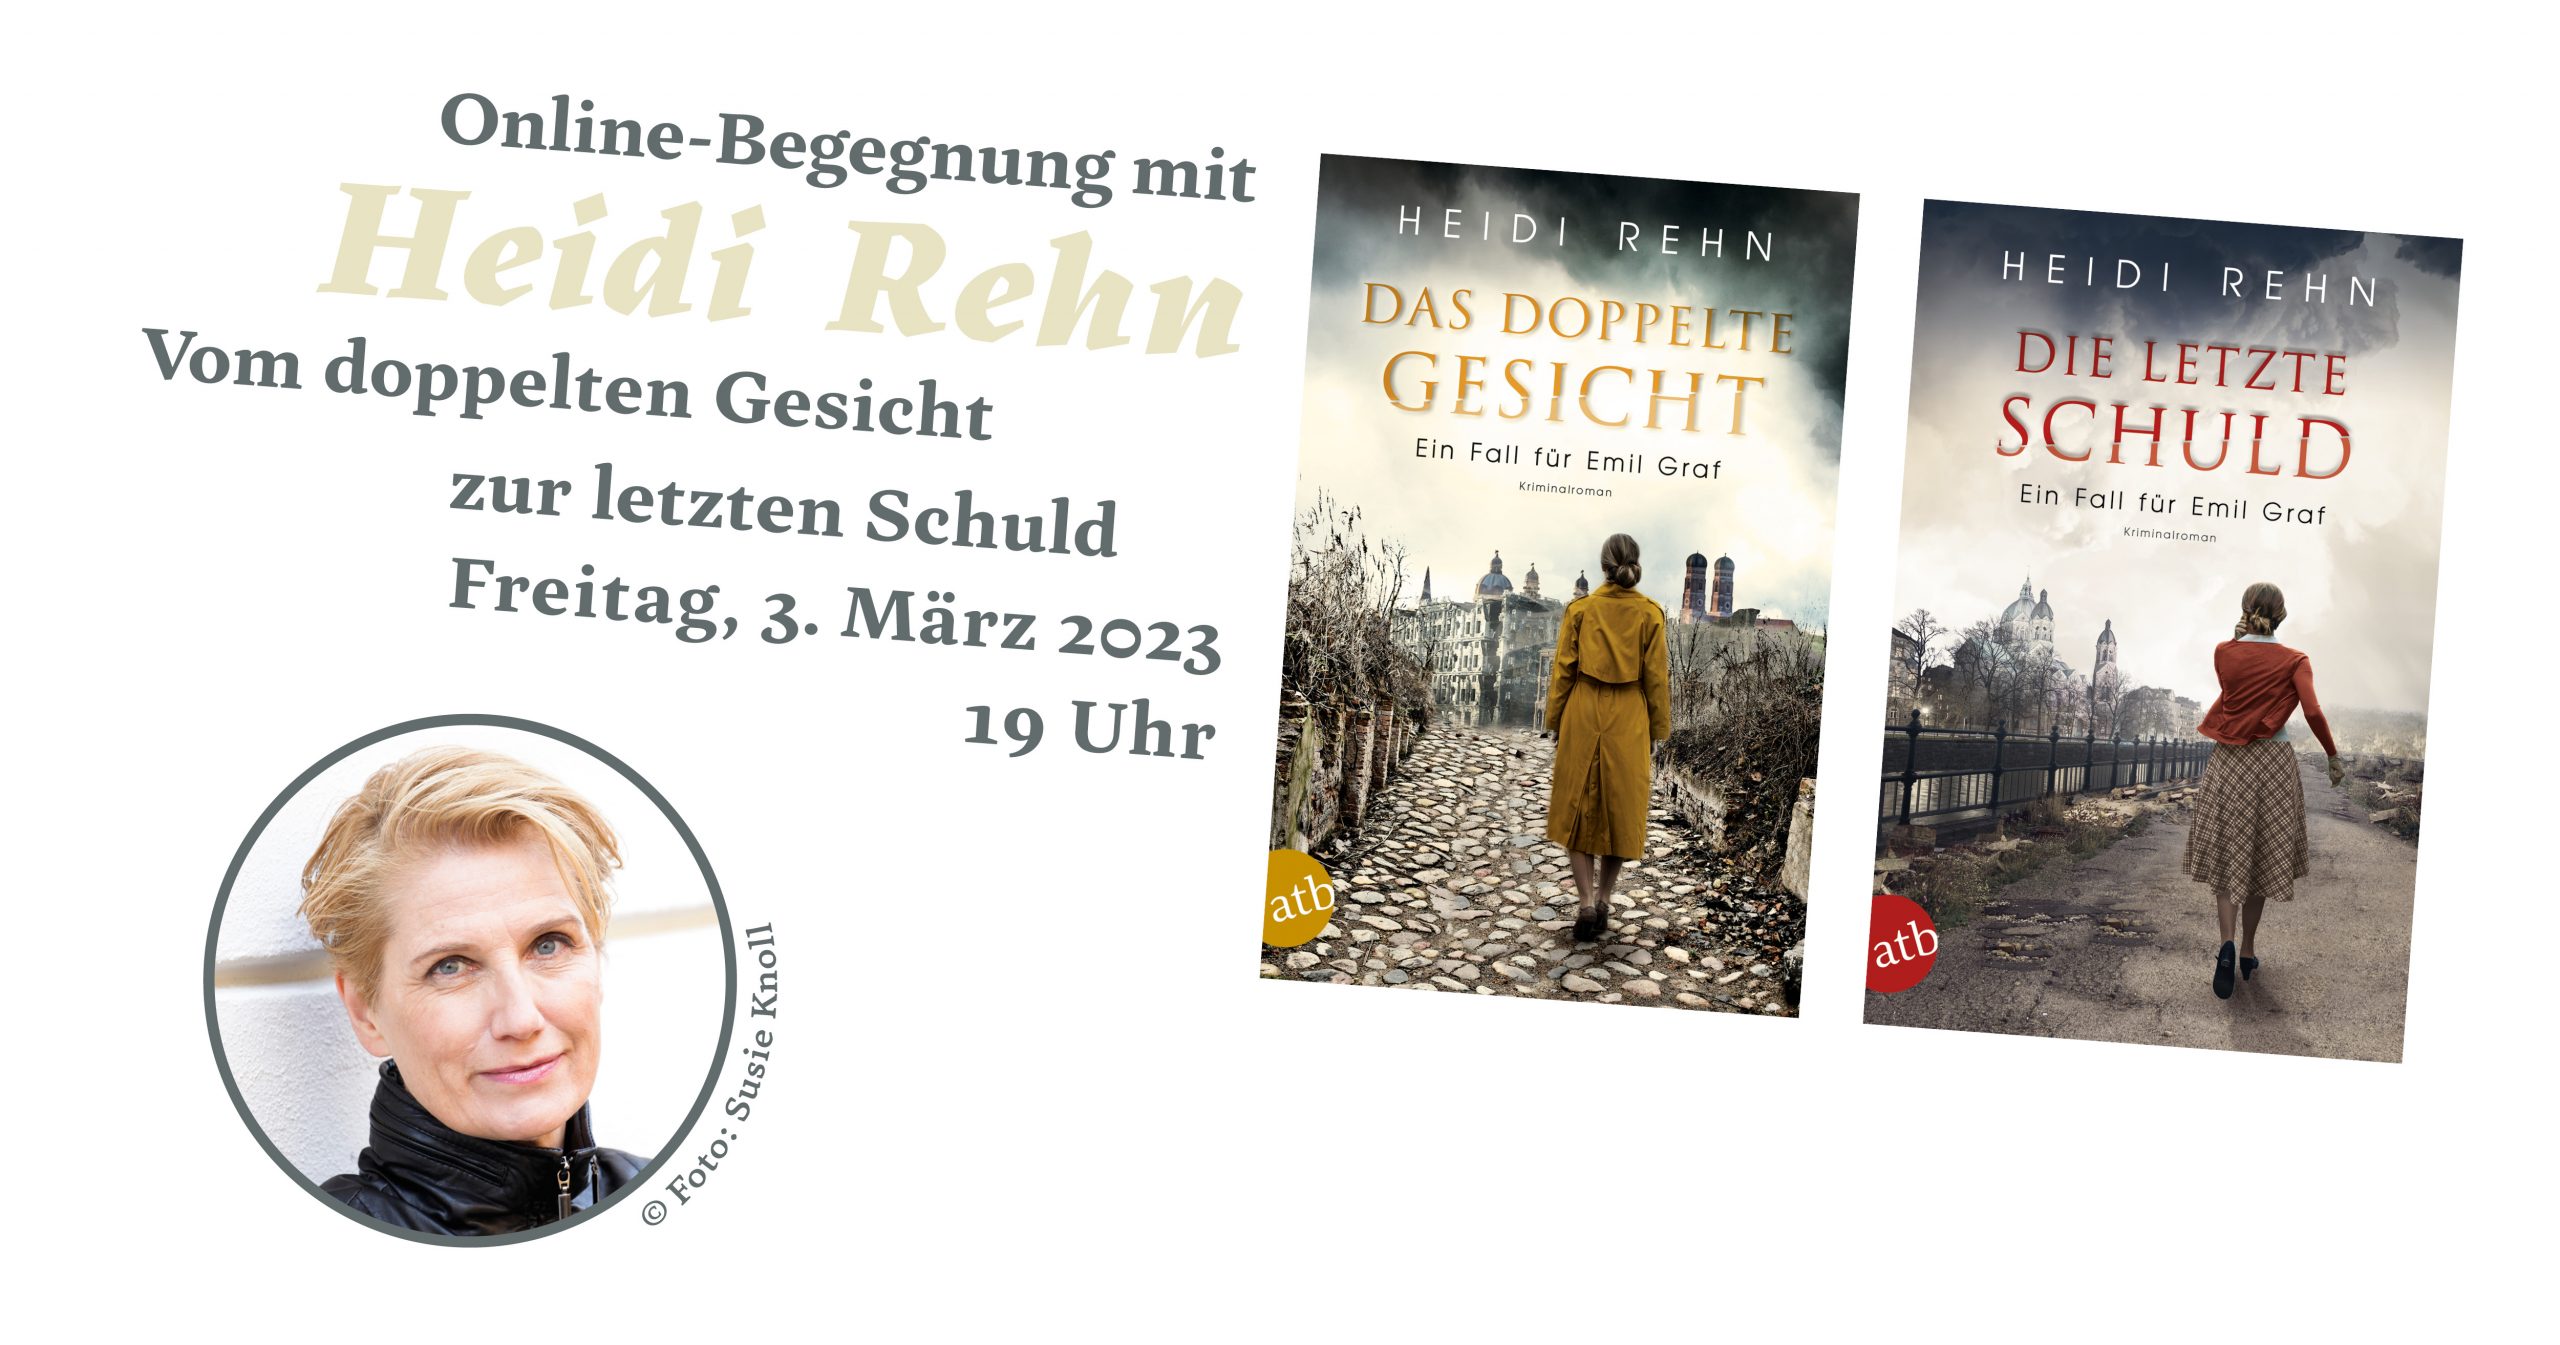 Vom doppelten Gesicht zur letzten Schuld | Online-Begegnung mit Heidi Rehn (03.03.2023)